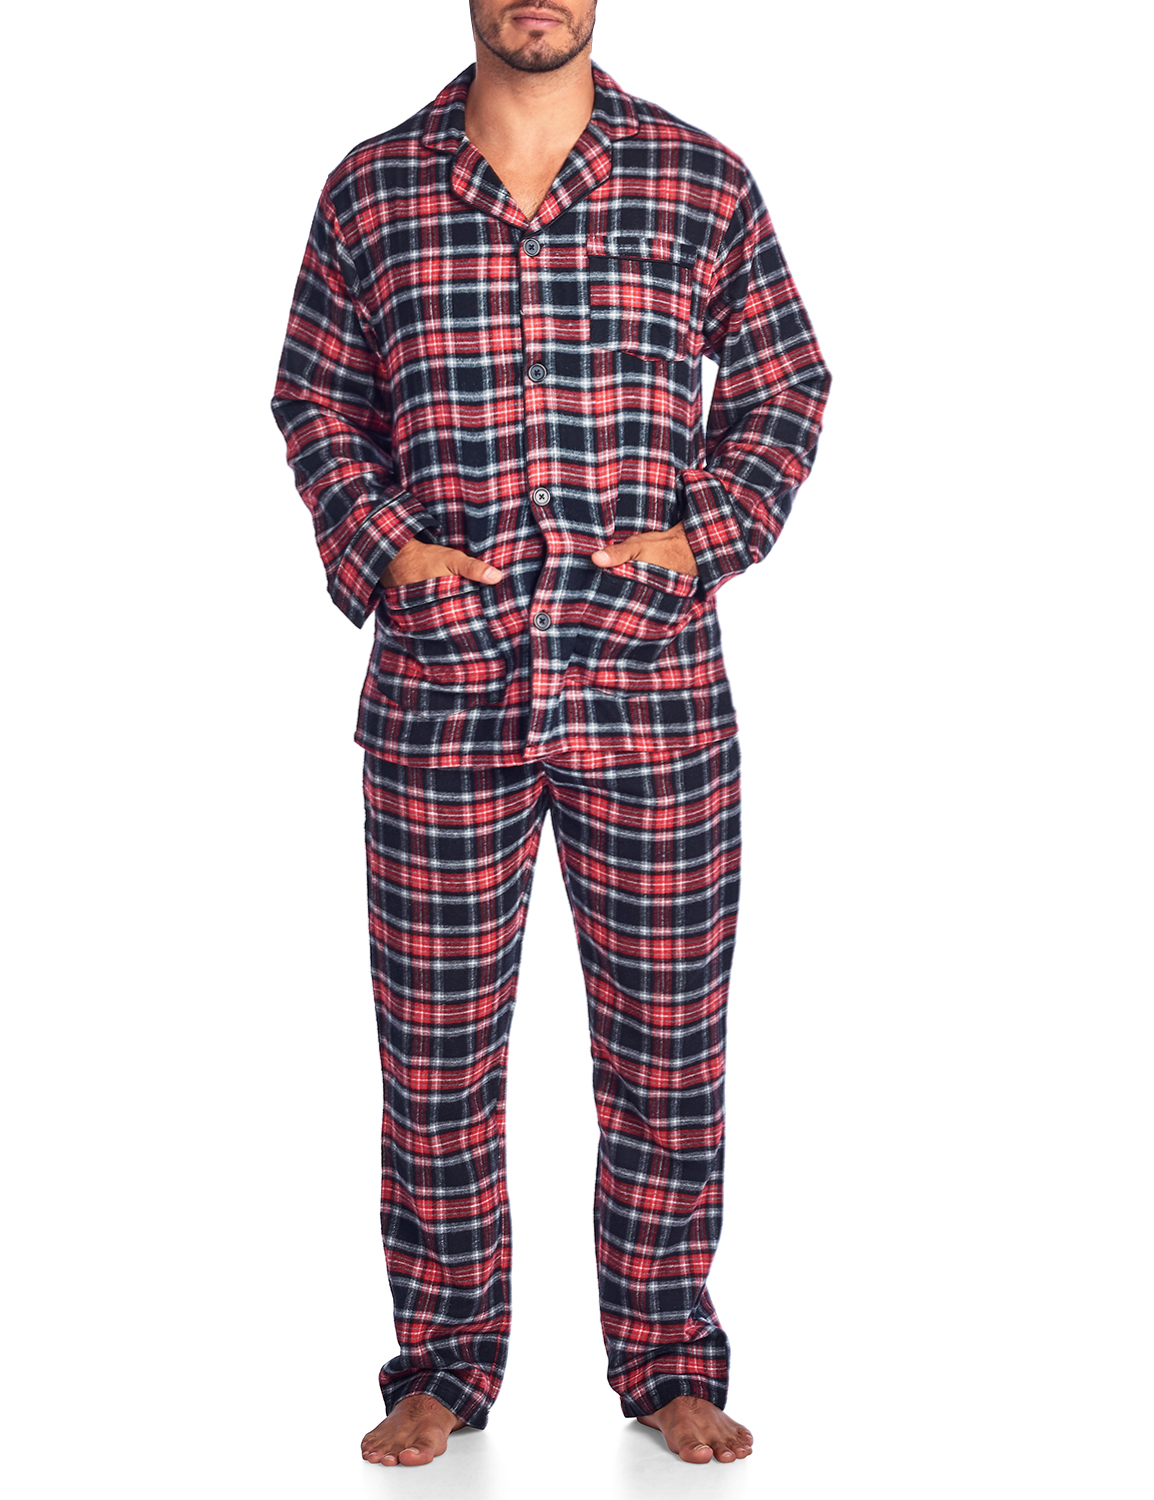 Ashford & Brooks Mens Flannel Plaid Pajamas Long Pj Set - Red Black ...